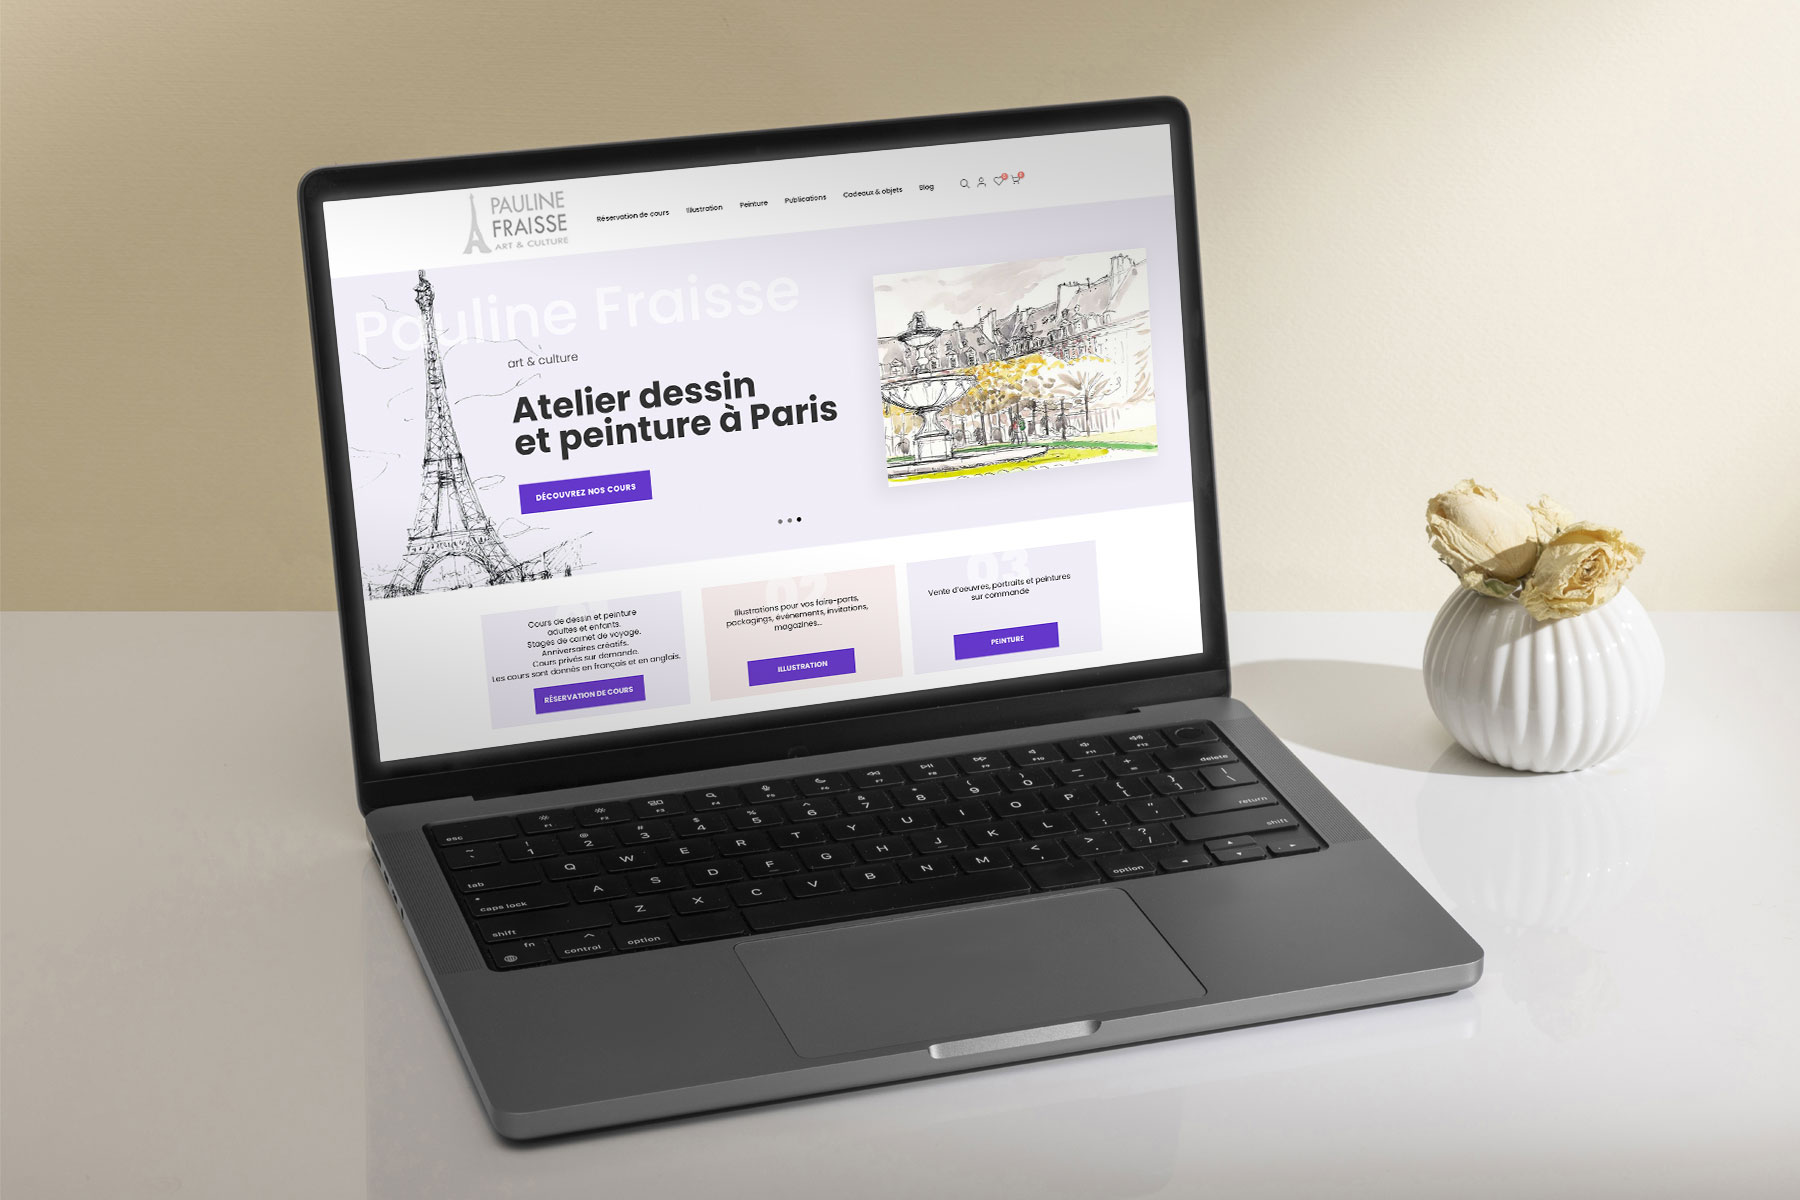 Les meilleurs sites de vente en ligne en Tunisie - Achat en ligne